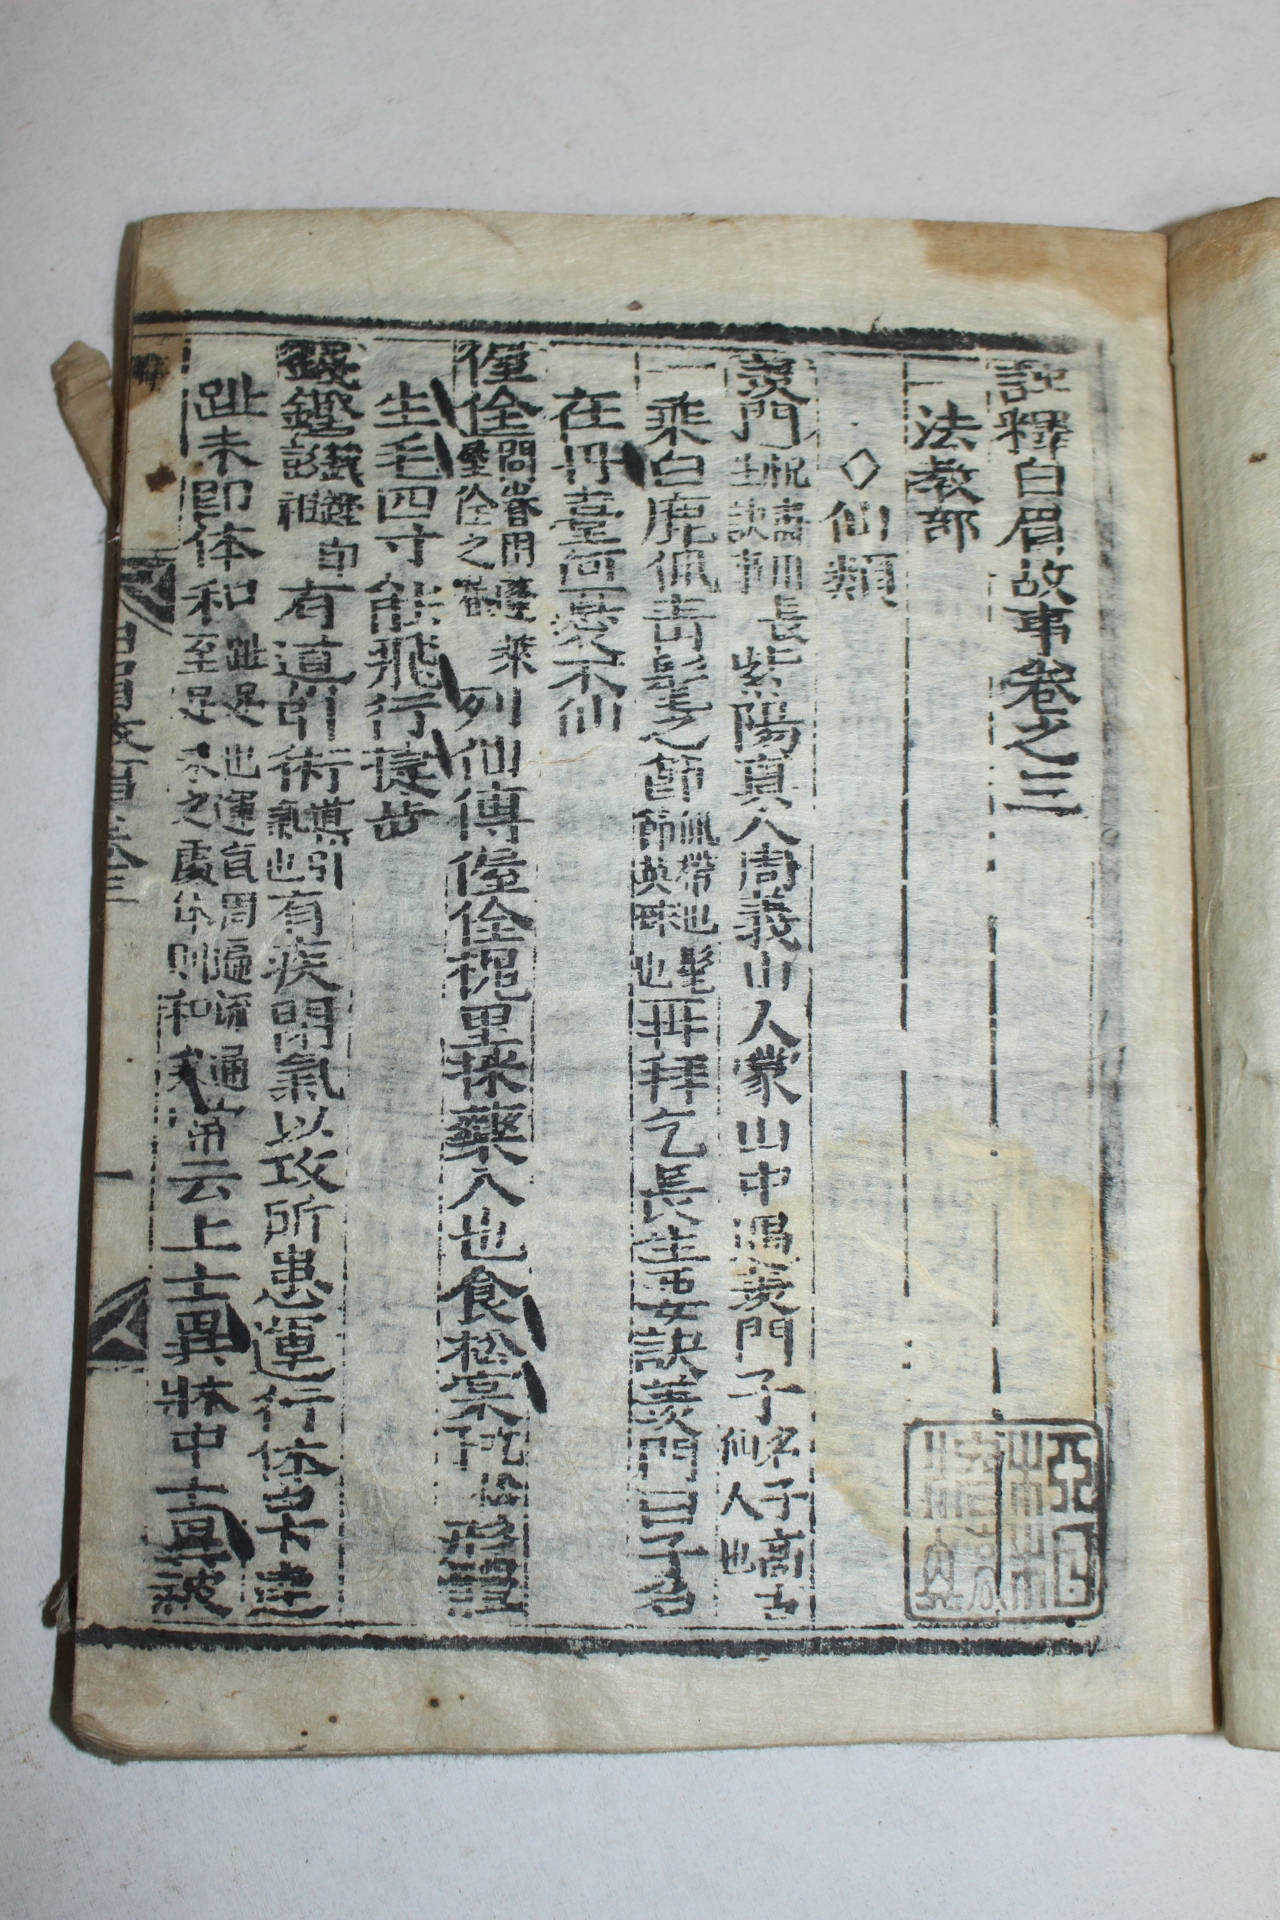 조선시대 목판본 주석백미고사(註釋白眉故事) 2책